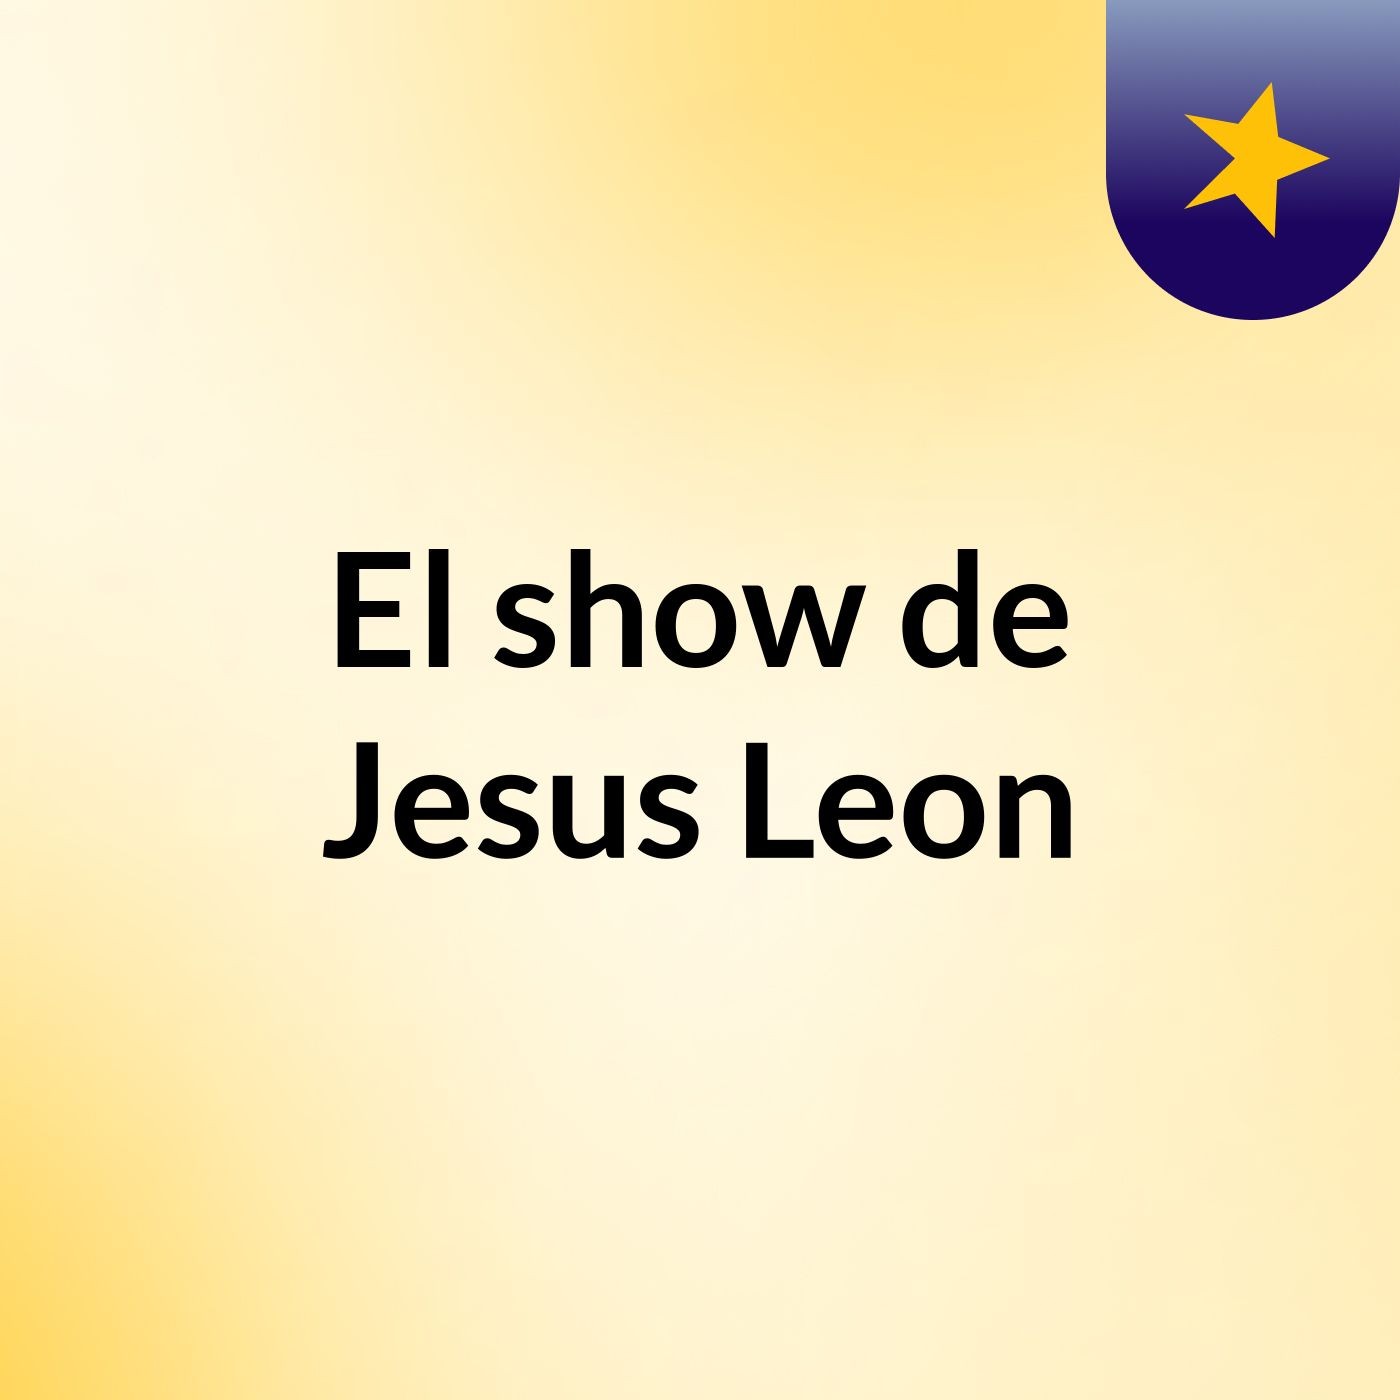 El show de Jesus Leon